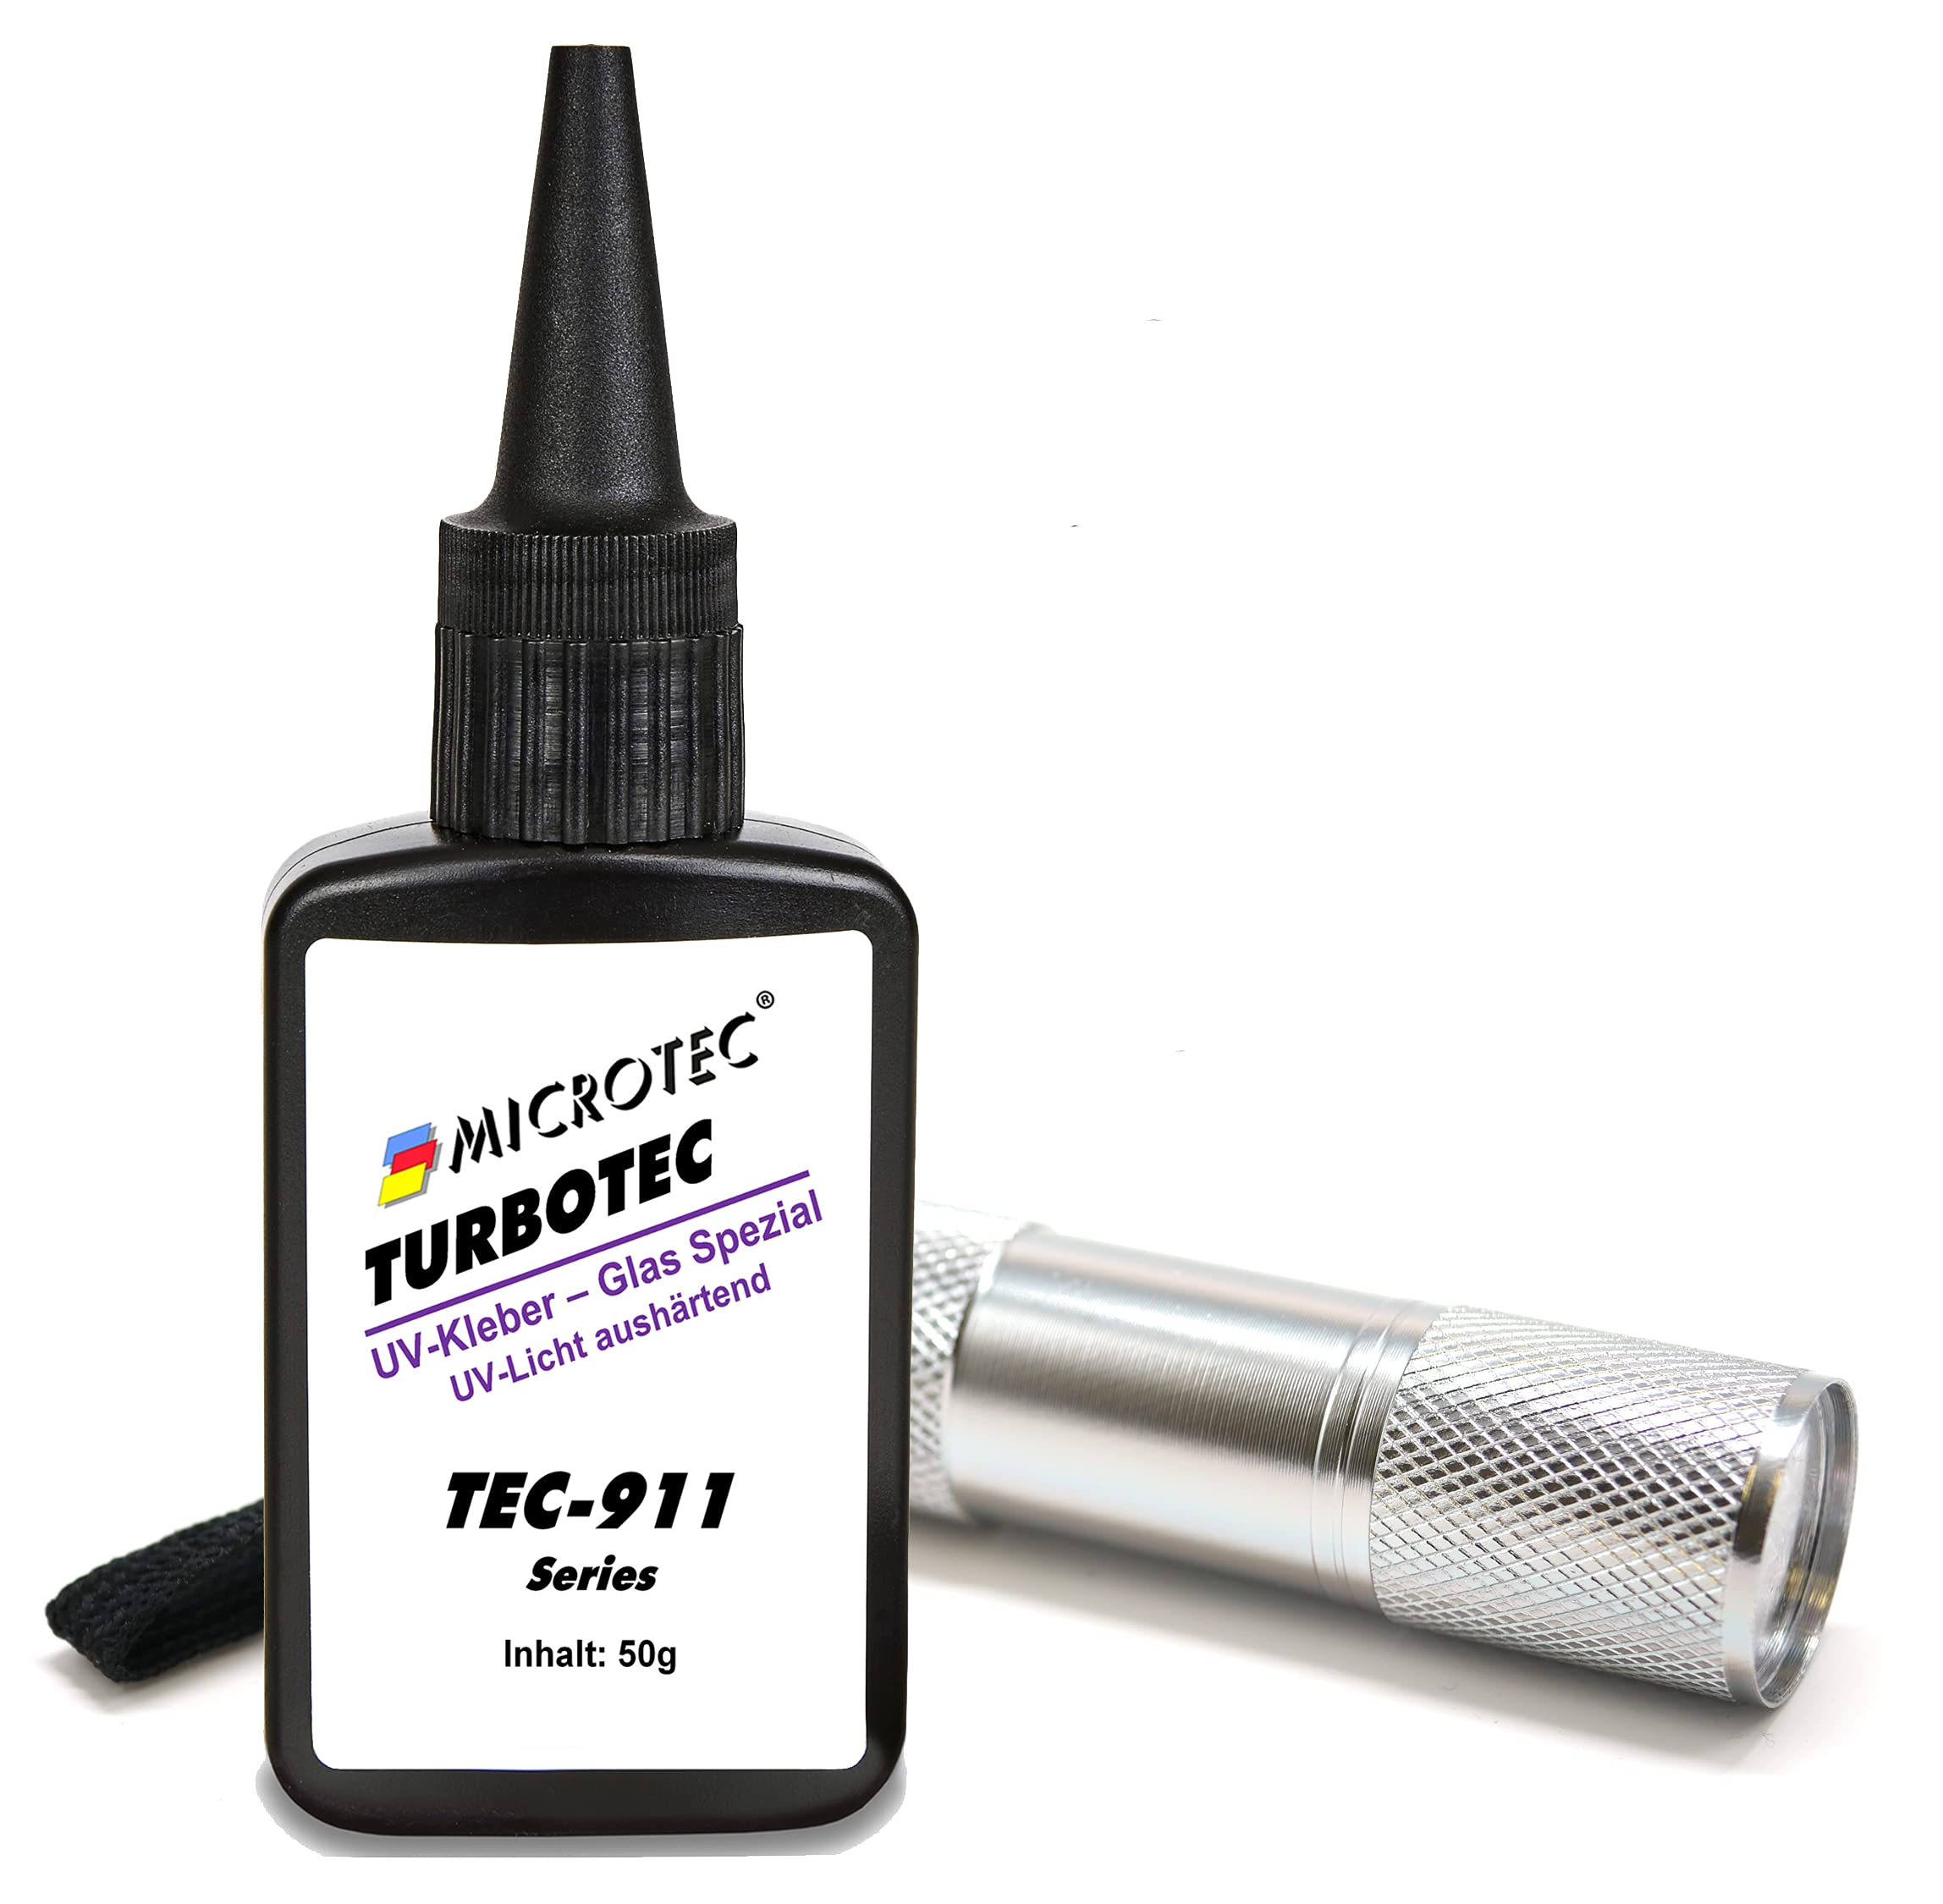 Microtec® Turbotec 911 Glas Spezial UV-Kleber | extra stark für Glas/Metall | 50g | mit UV-Taschenlampe | lichthärtender und transparenter Klebstoff | Qualitätsprodukt aus Deutschland